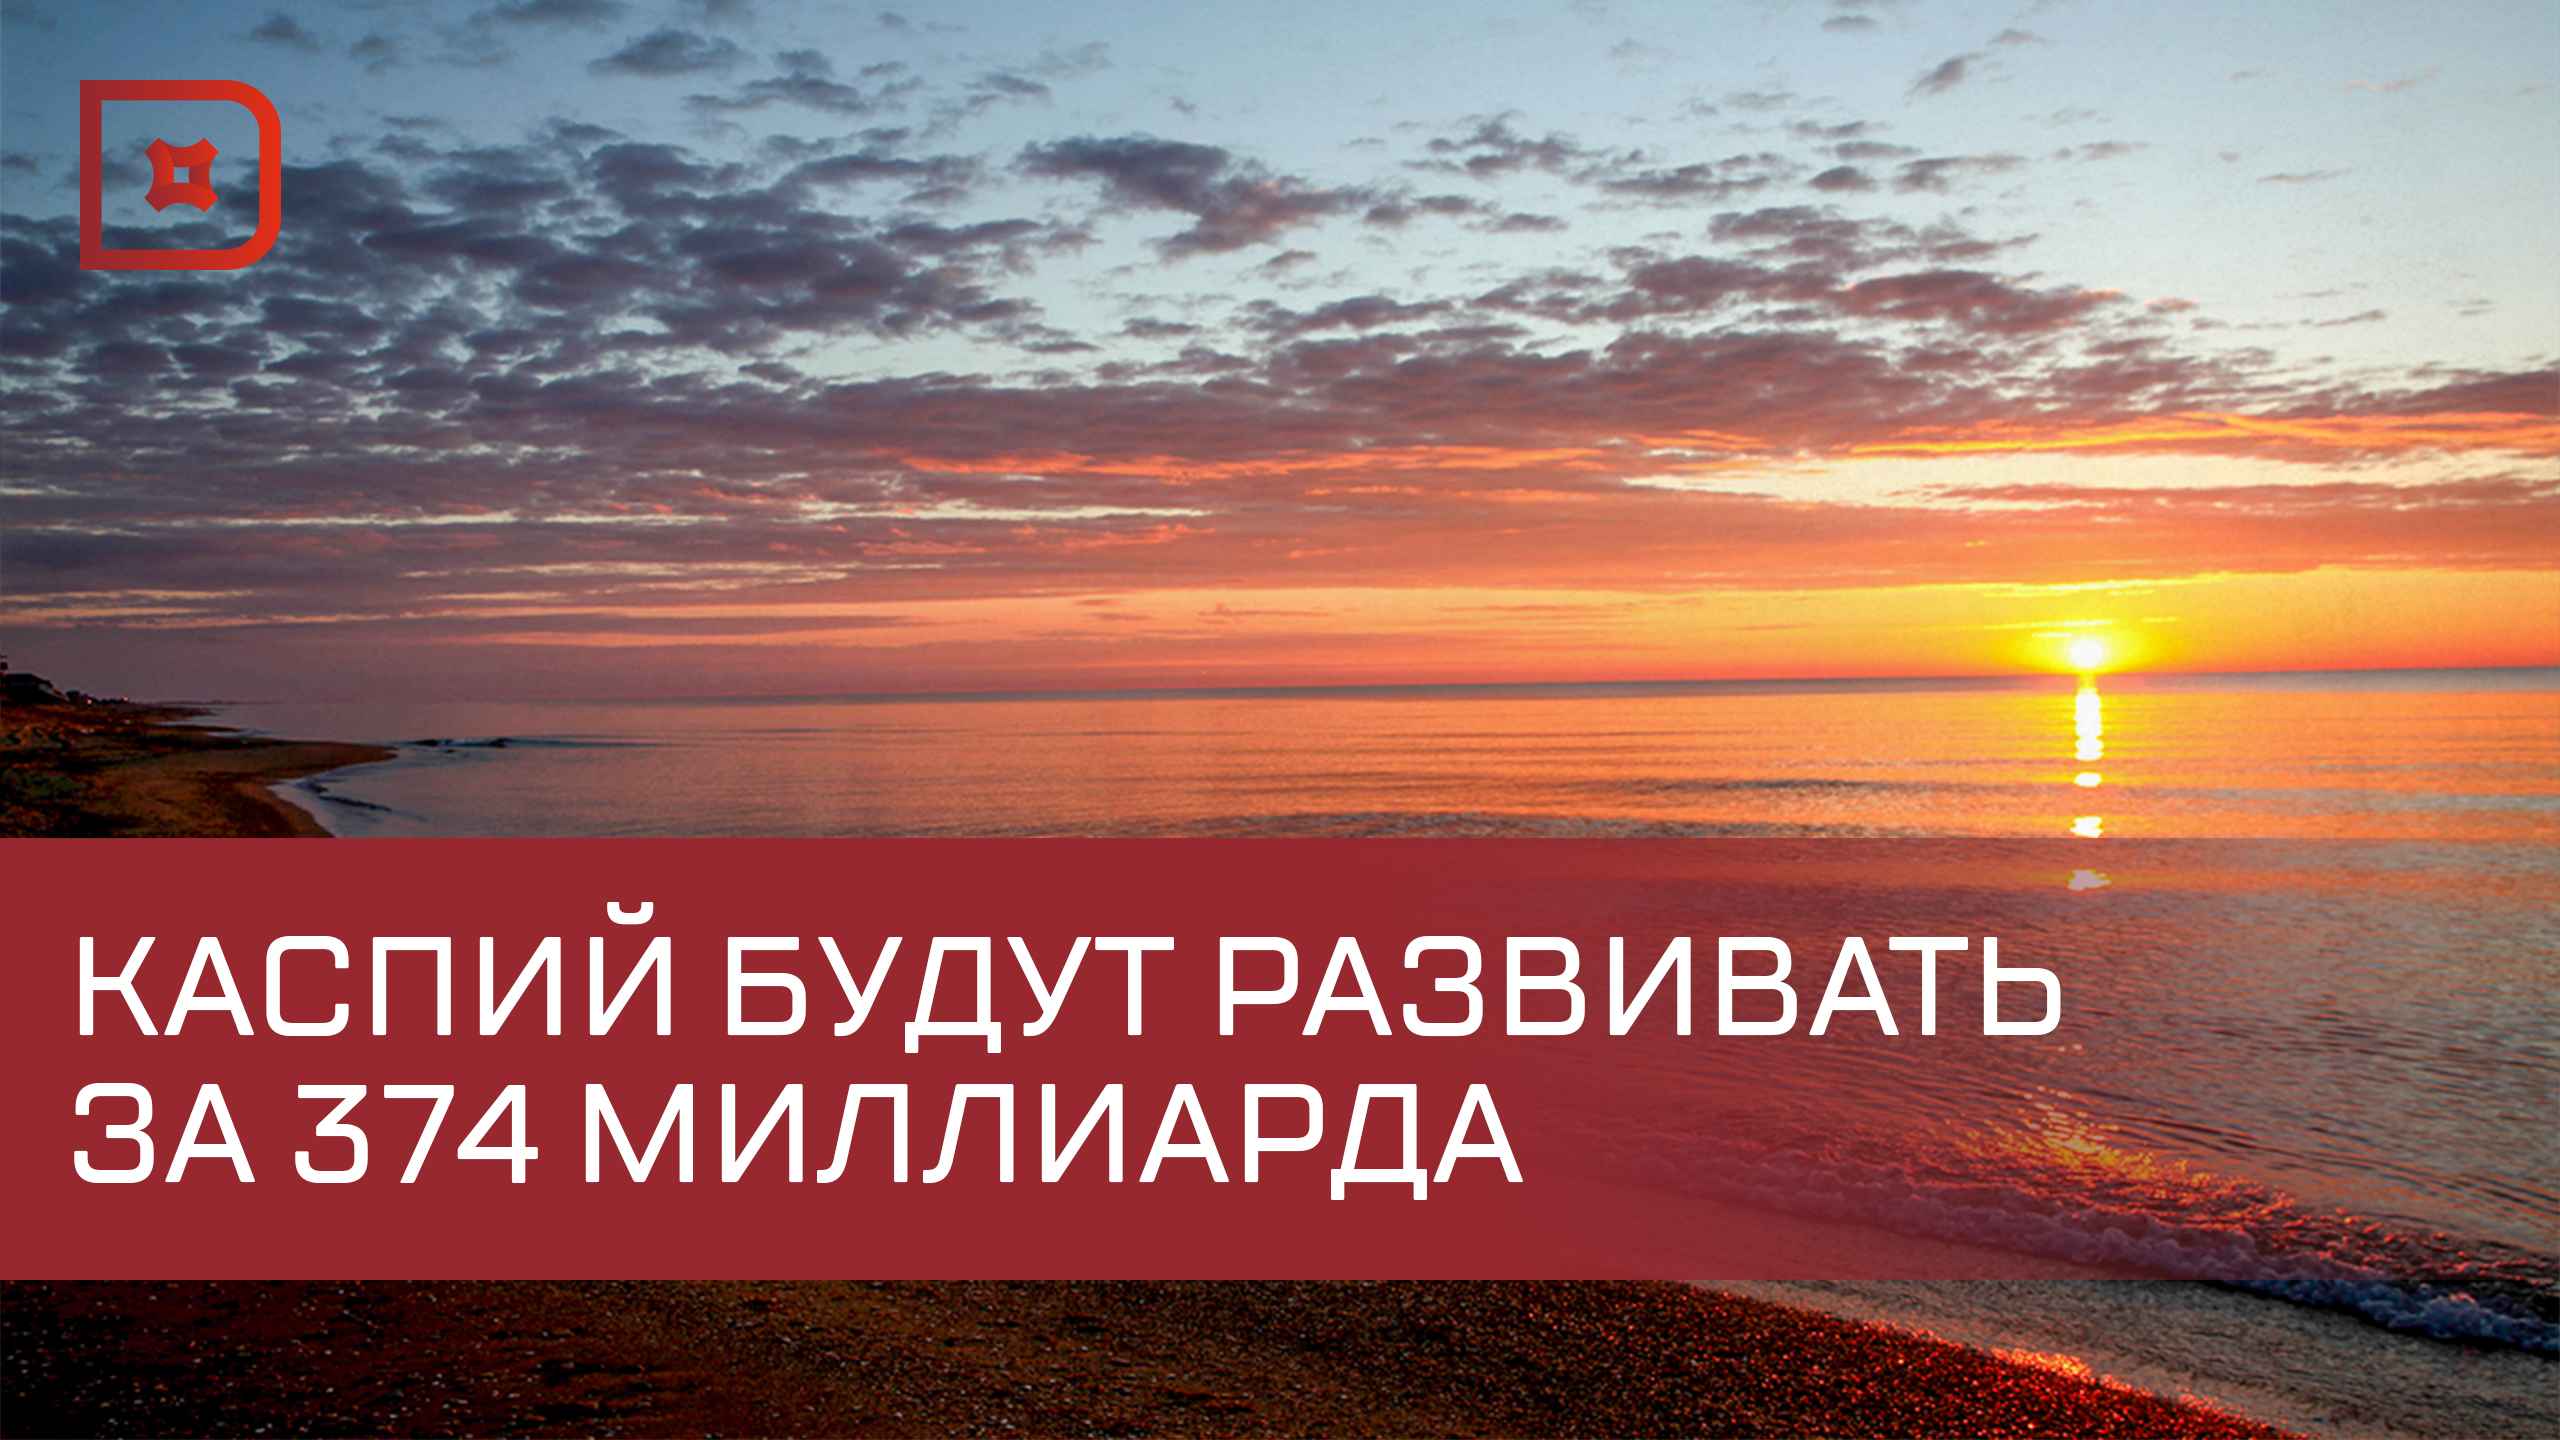 Более 370 млрд рублей инвестируют в развитие Каспийского кластера